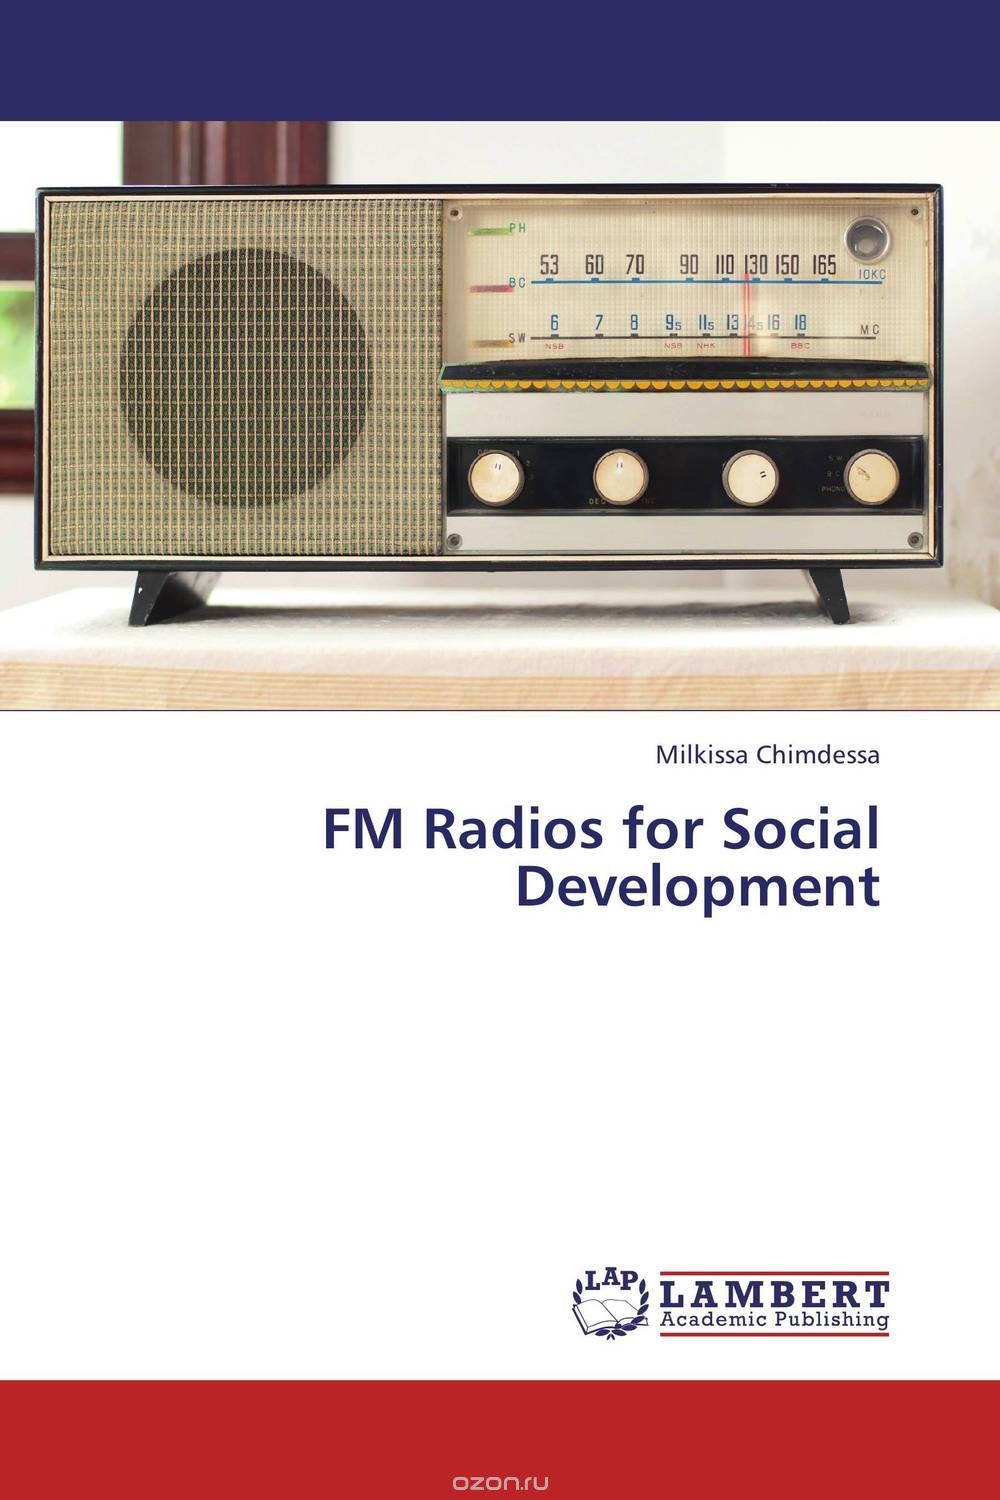 Скачать книгу "FM Radios for Social Development"